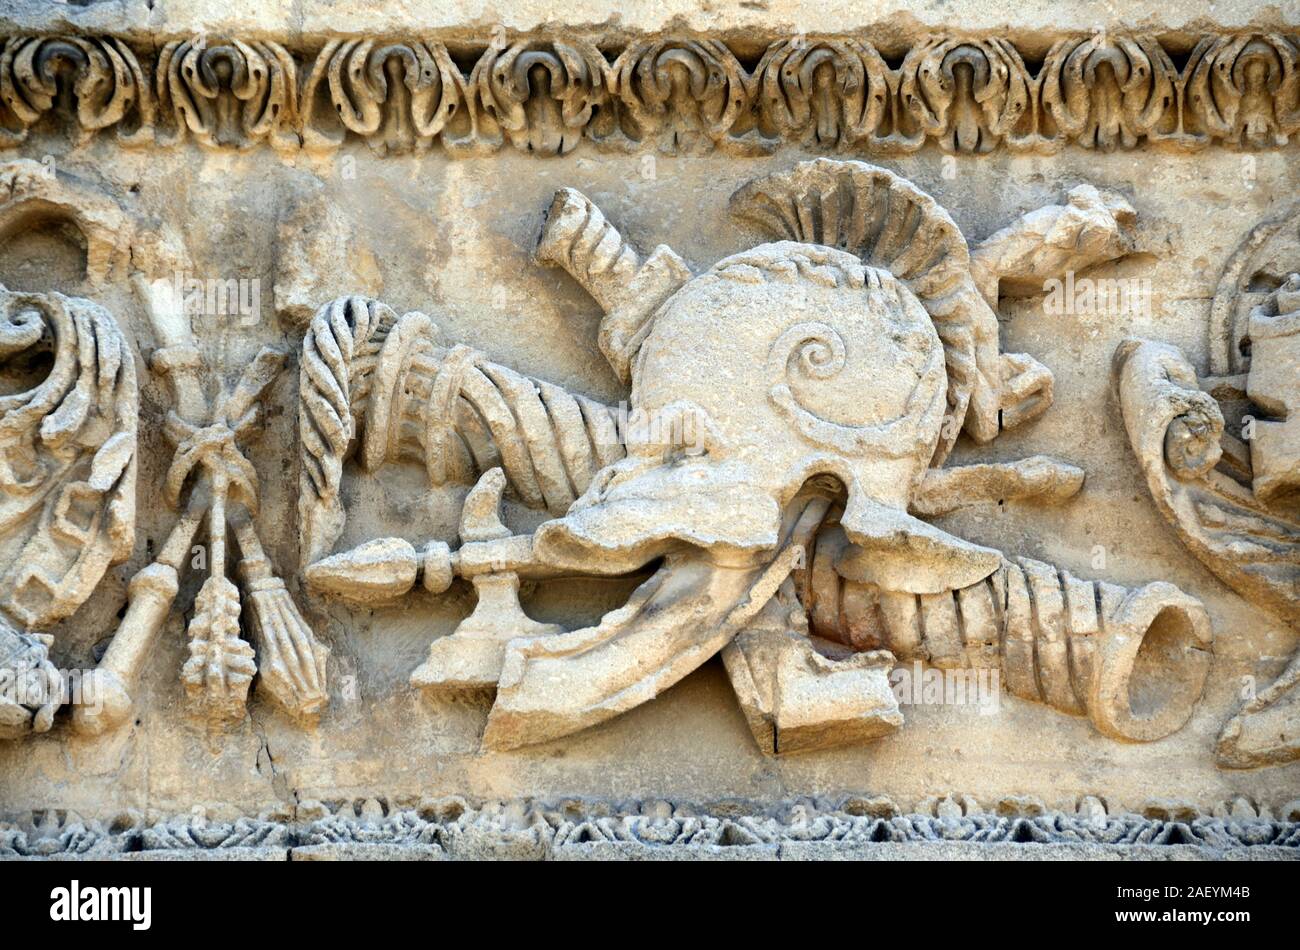 La sculpture baroque en pierre ou de détails casque de soldat sur la façade du château Renaissance en ruines de La Tour-d'Aigues Vaucluse Luberon Provence France Banque D'Images